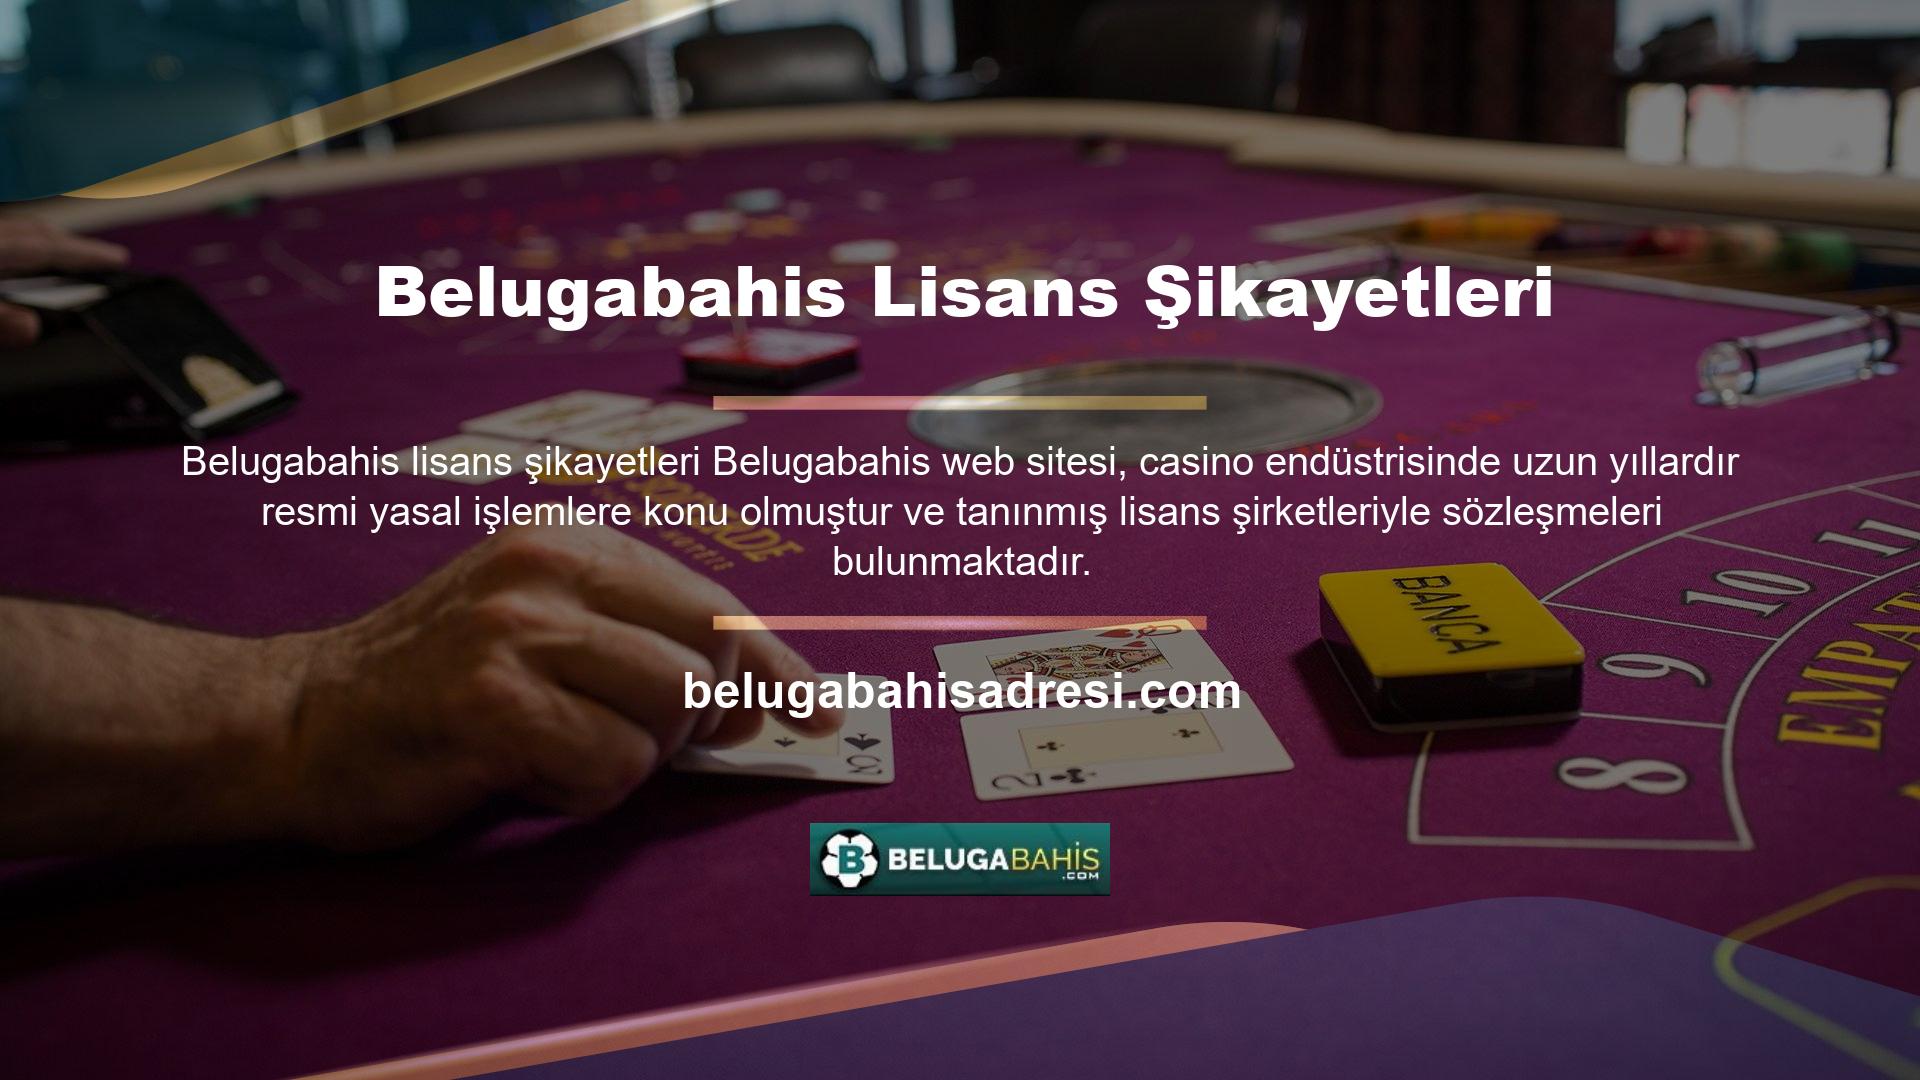 Ayrıca Belugabahis bahisleri içerik açısından oldukça özgün ve gelişmiş oyun seçenekleri sunmaktadır